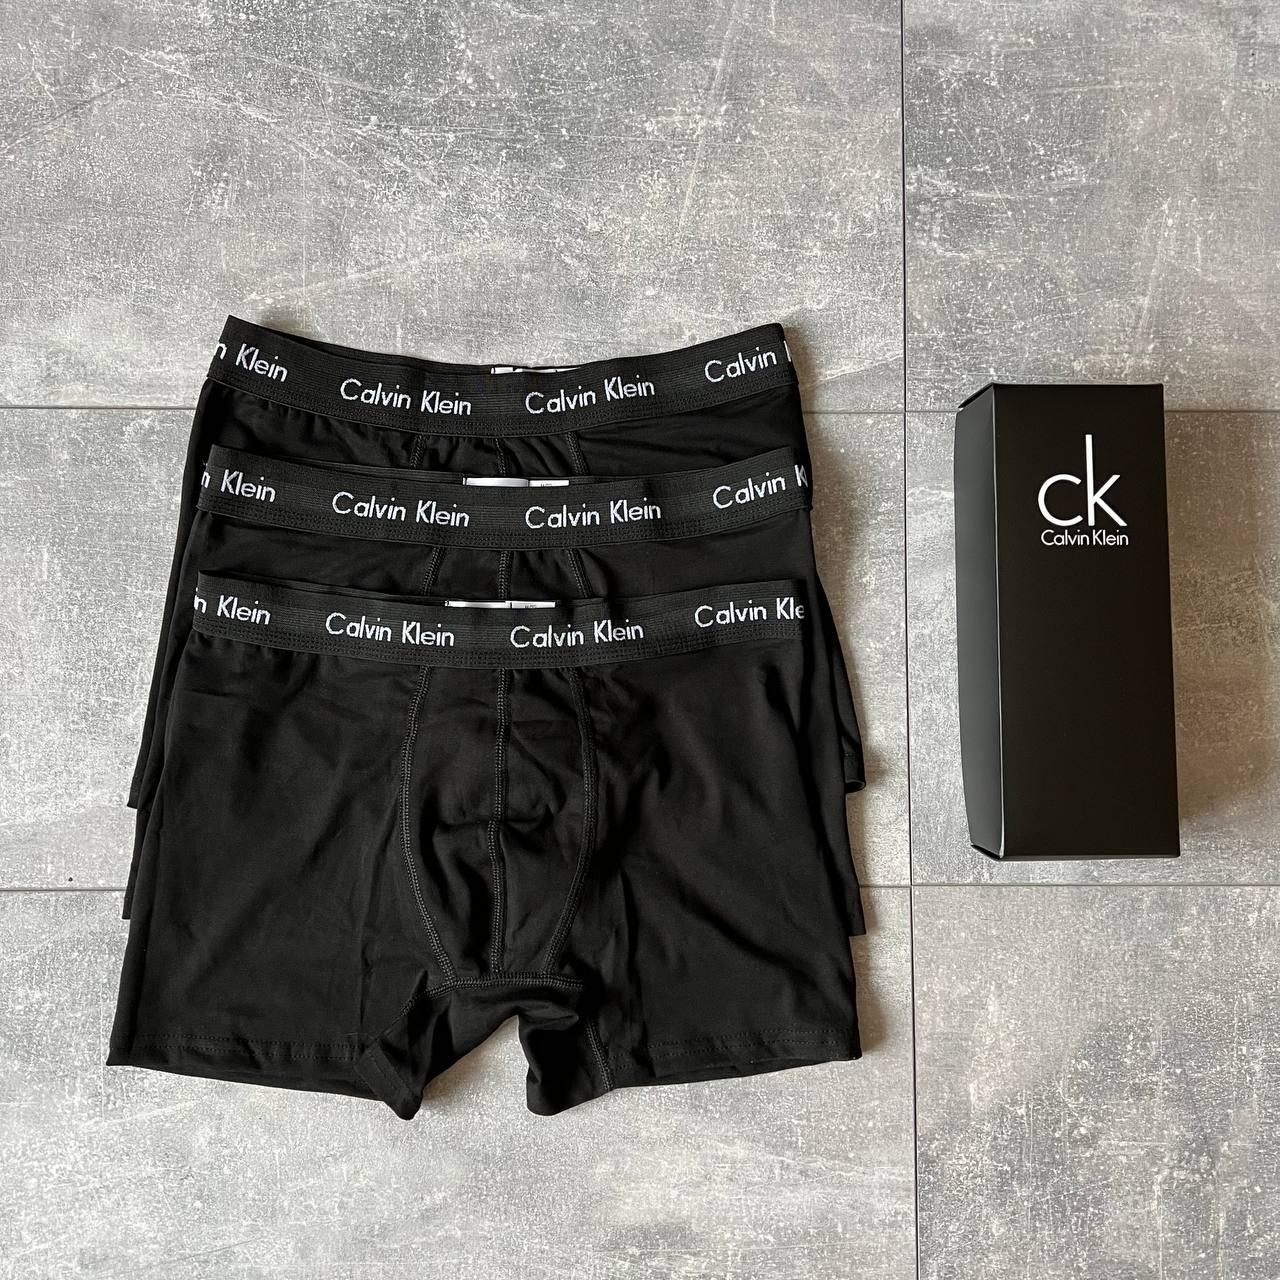 Чоловічі труси Calvin Klein чорні 3 шт Боксери Кельвін Кляйн Подарунковий набір